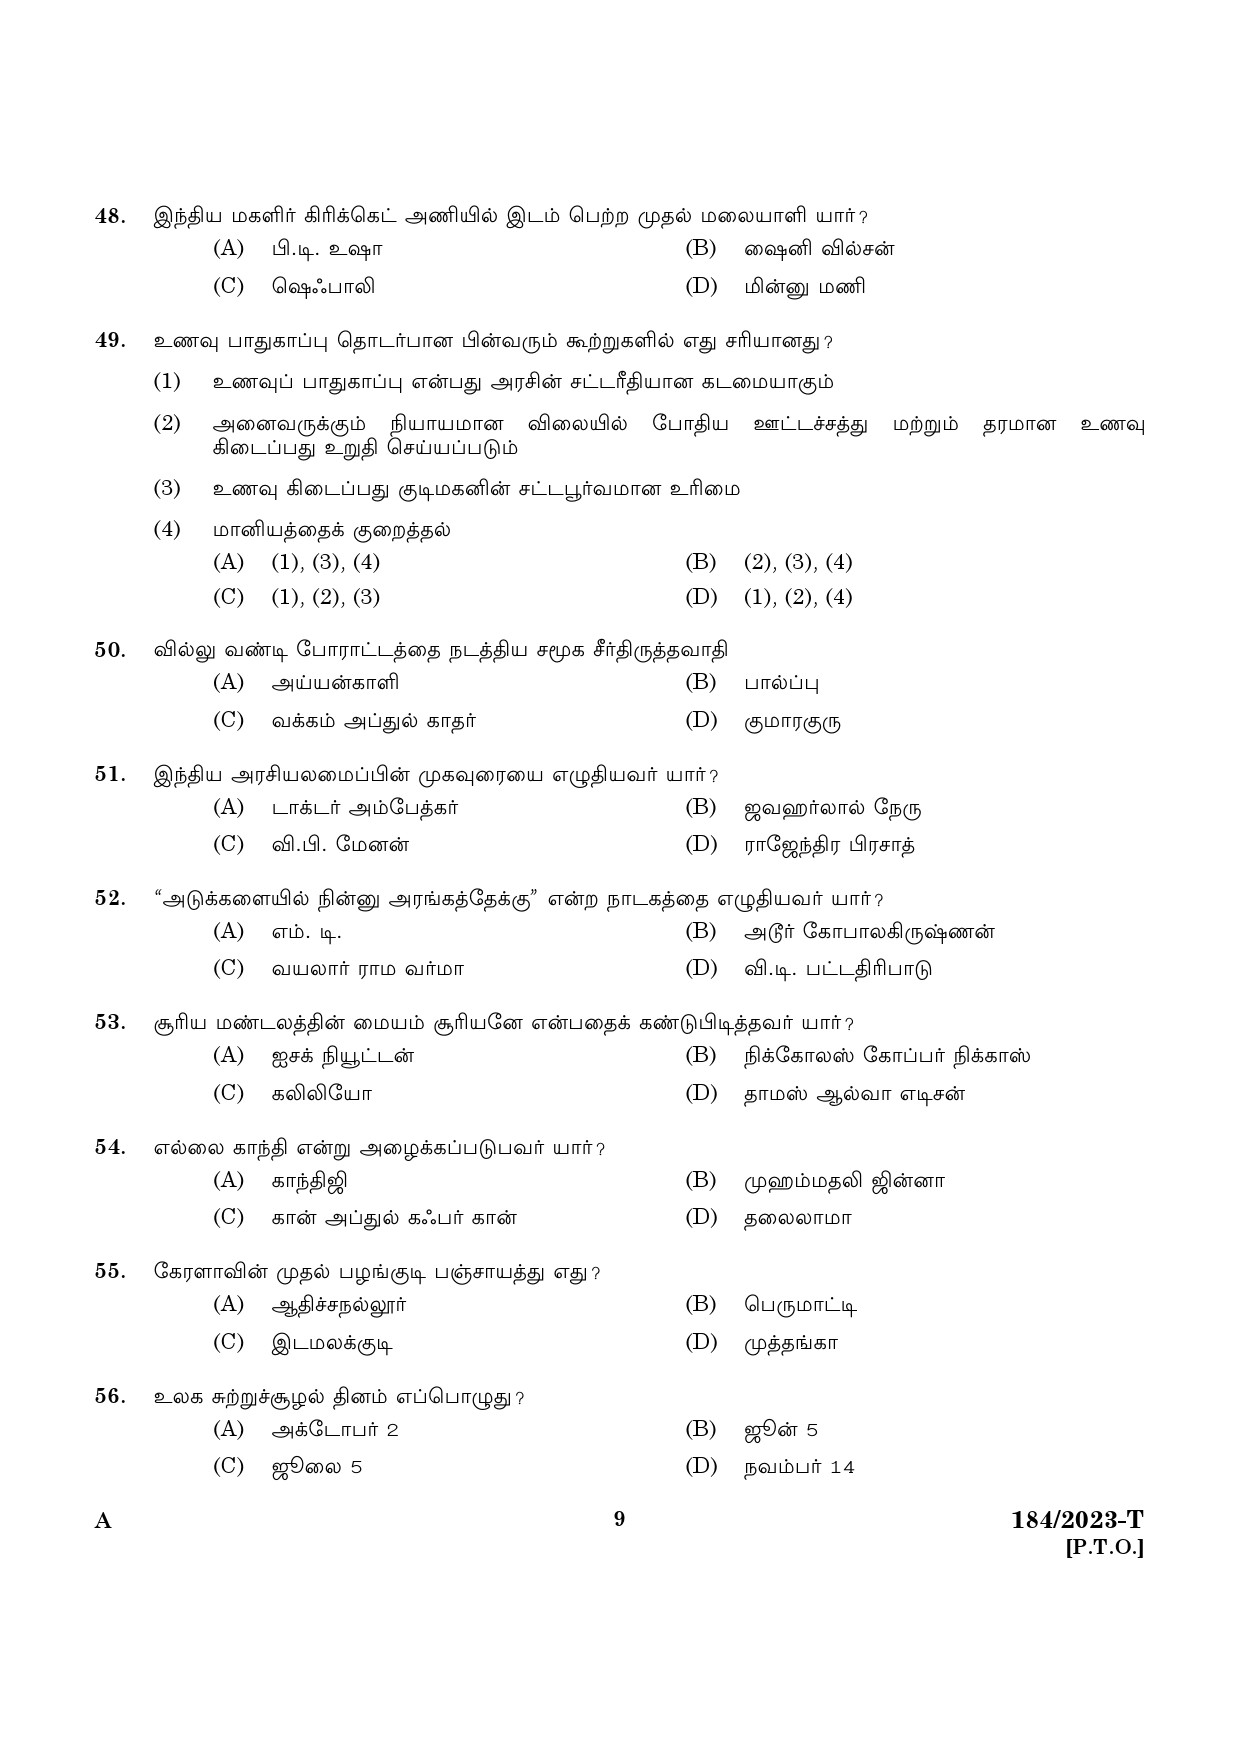 KPSC LGS Tamil Exam 2023 Code 1842023 T 7